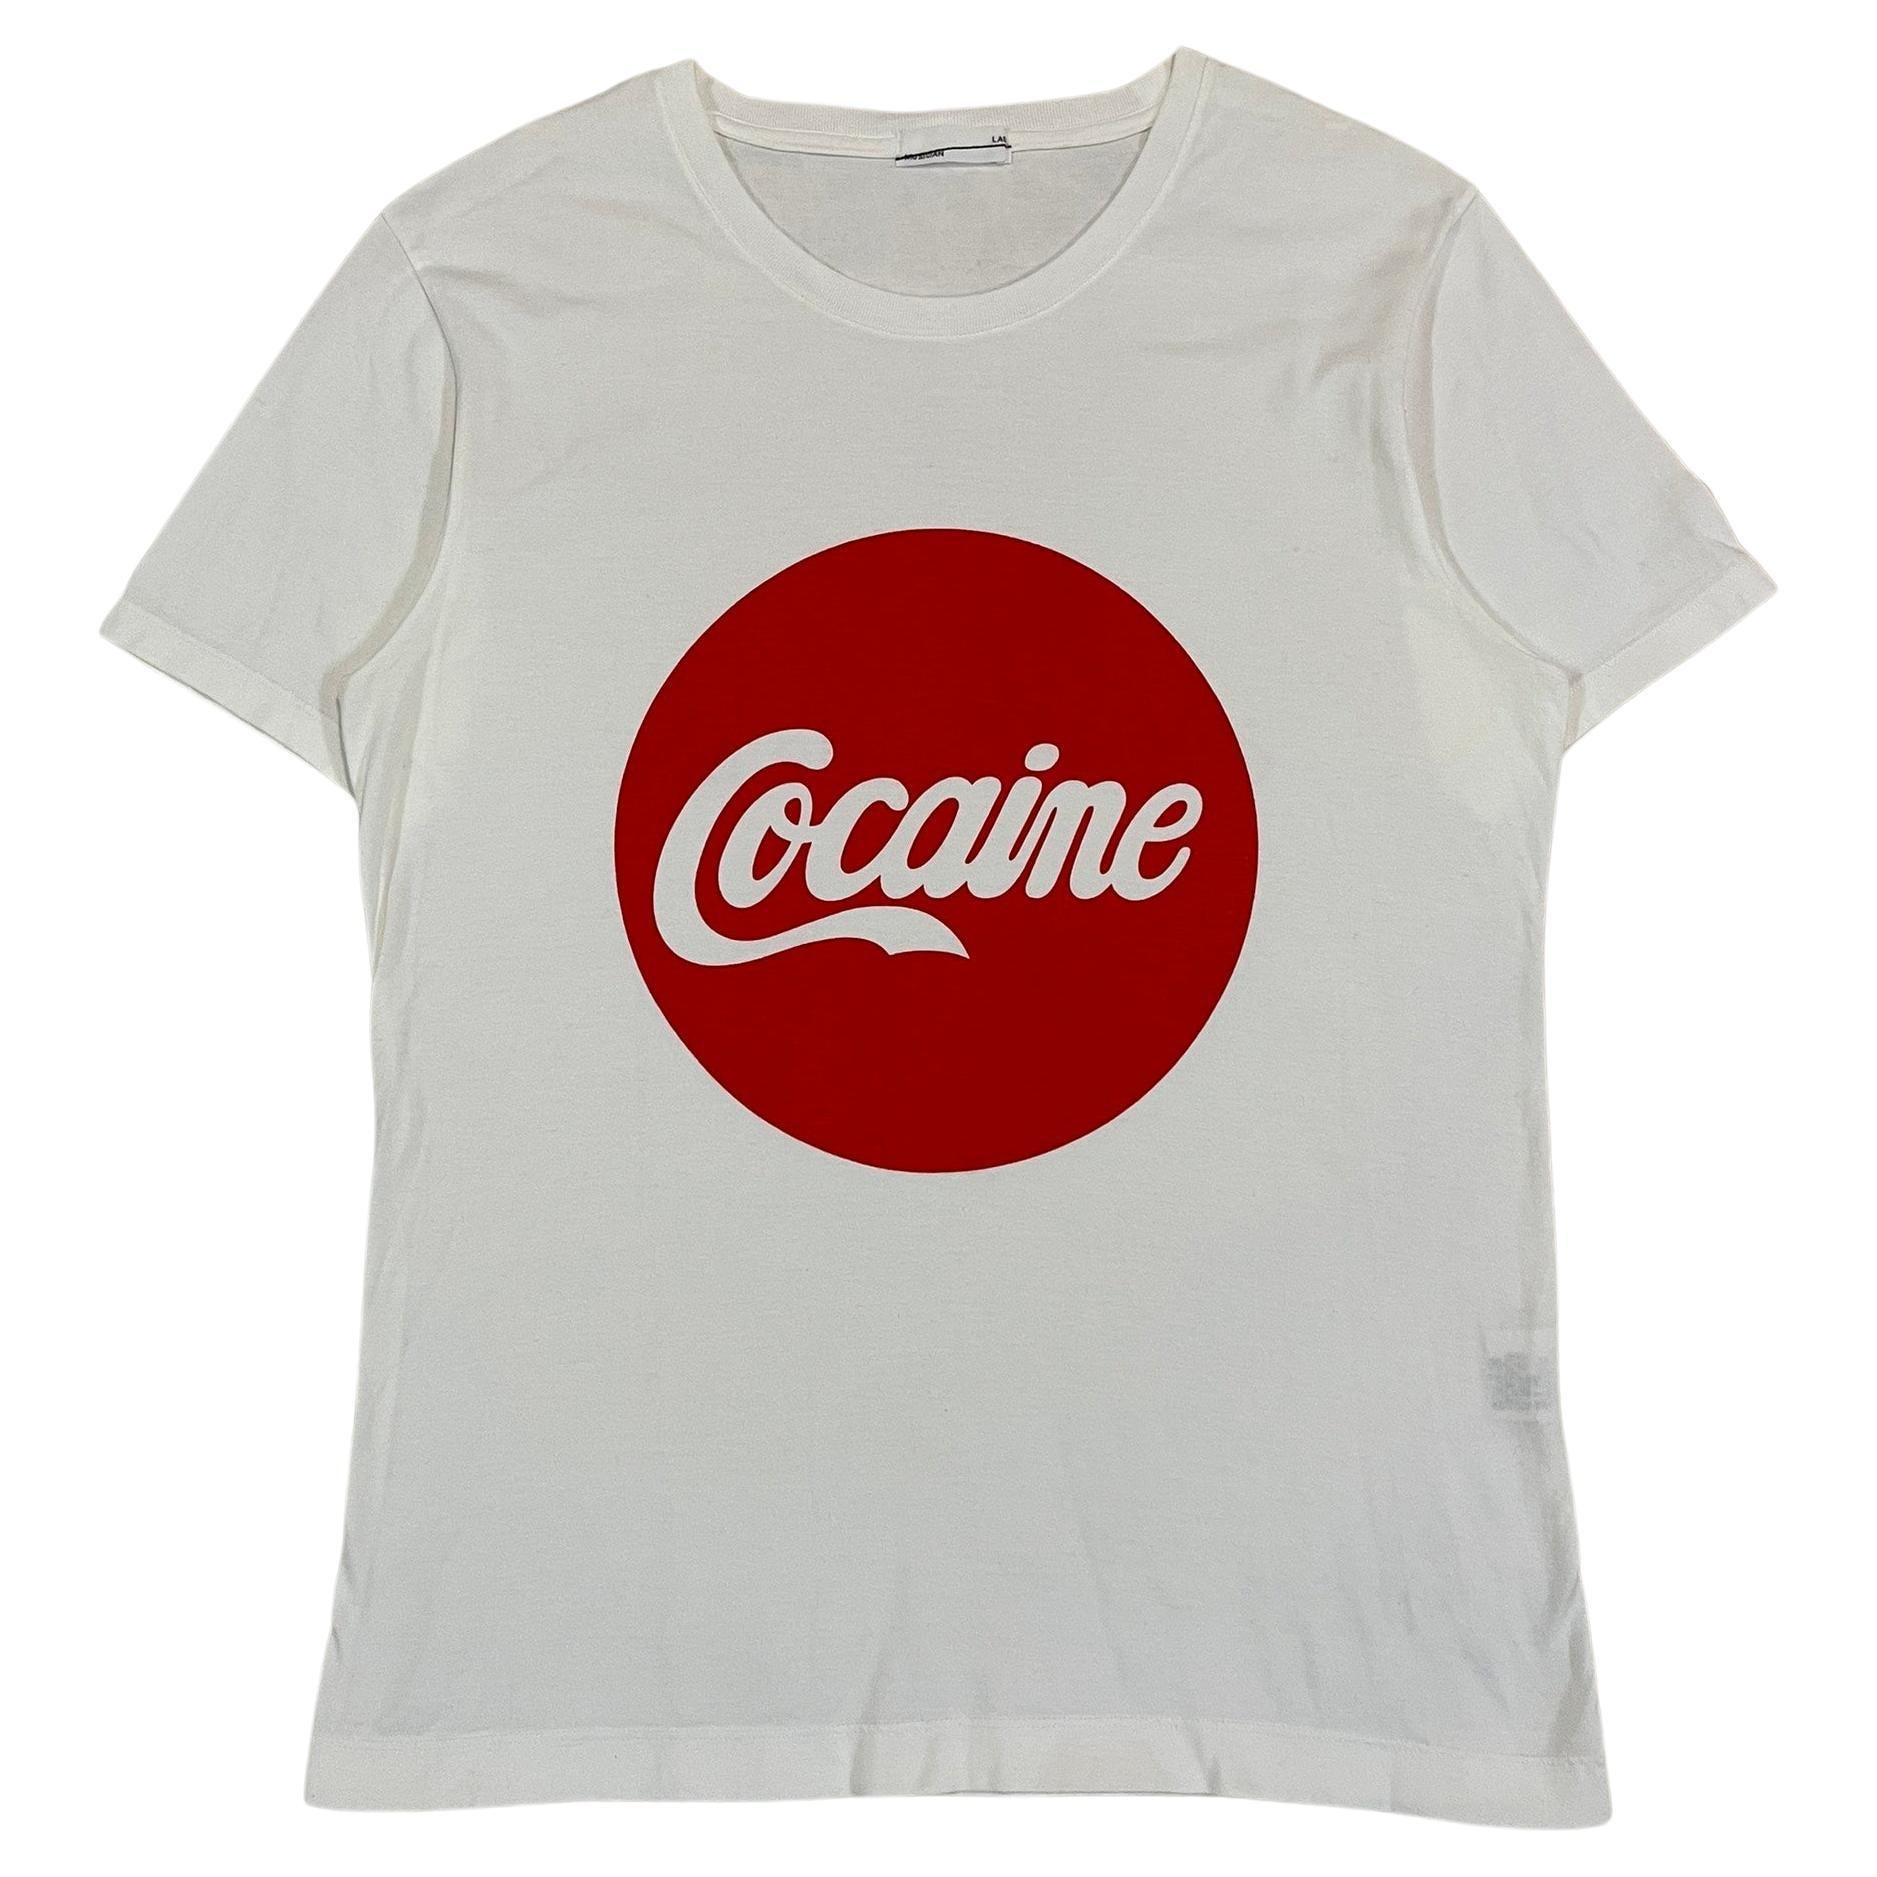 Lad Musician S/S2017 "Cocaine" T-Shirt For Sale